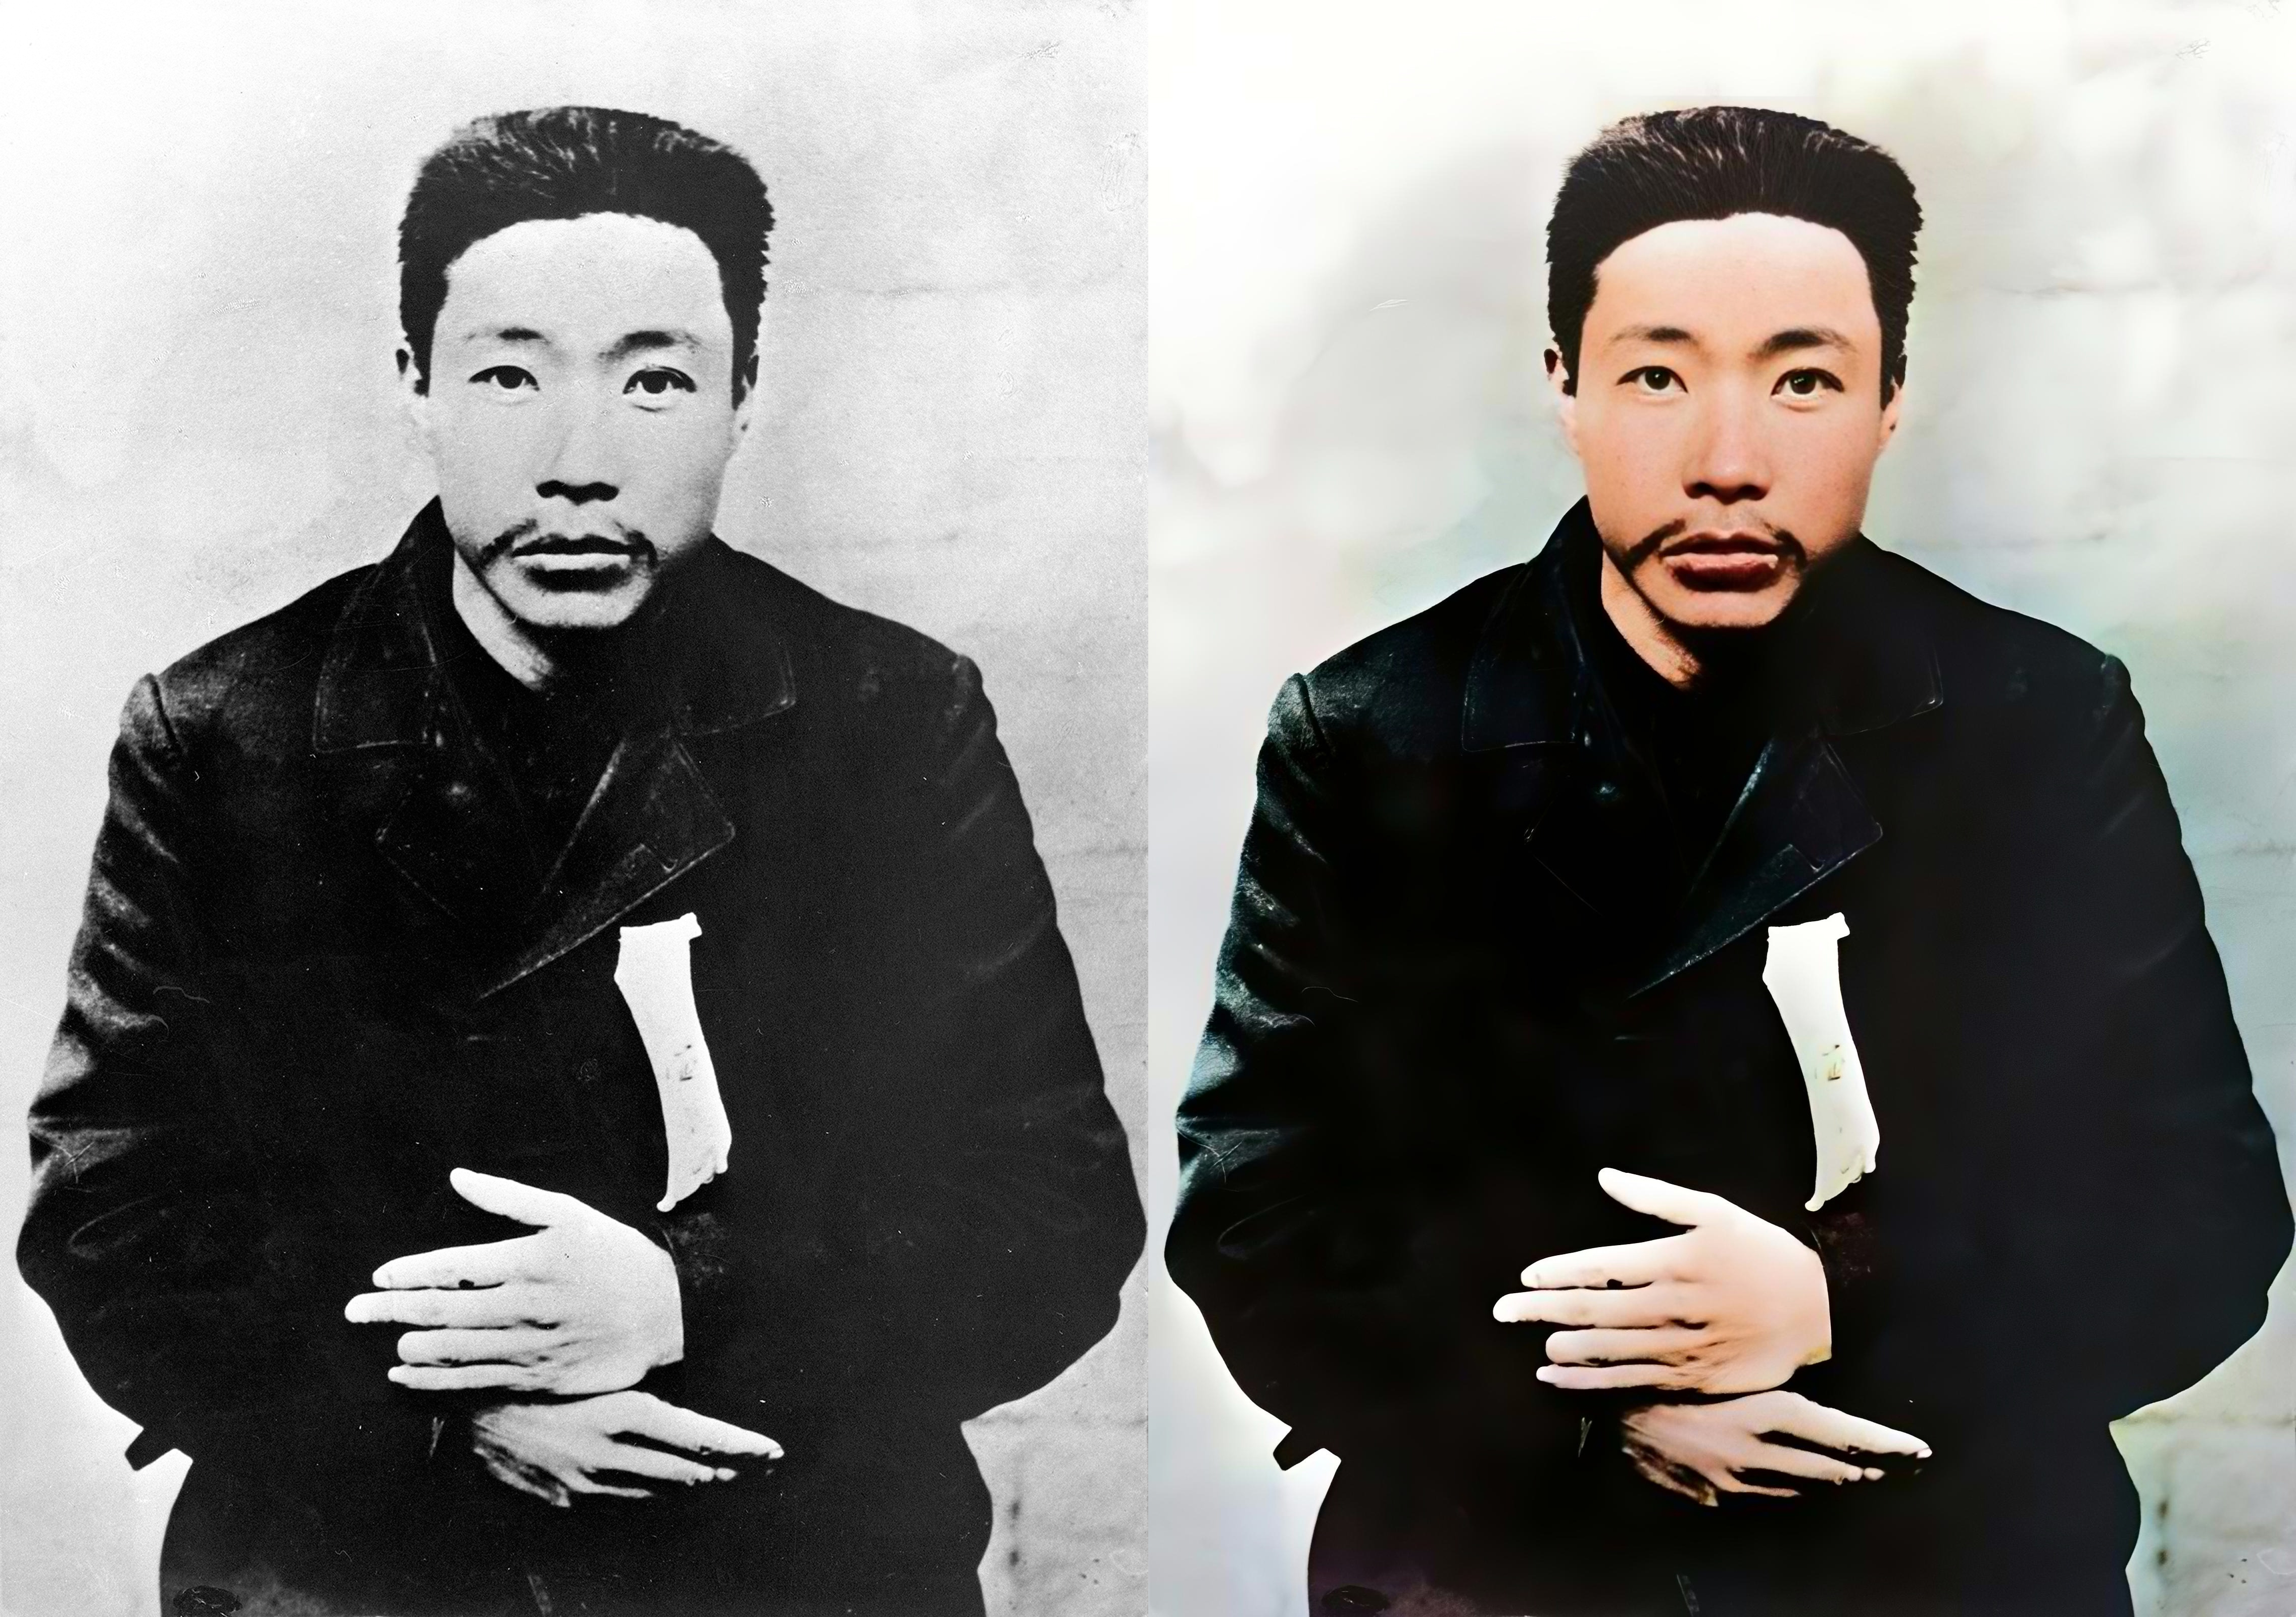 안중근(1879-1910) 교육사업과 의병운동을 전개하고 단지동맹을 결성했다. 1909년 10월 26일 한국 침략의 원흉인 이토 히로부미 암살에 성공하였다.